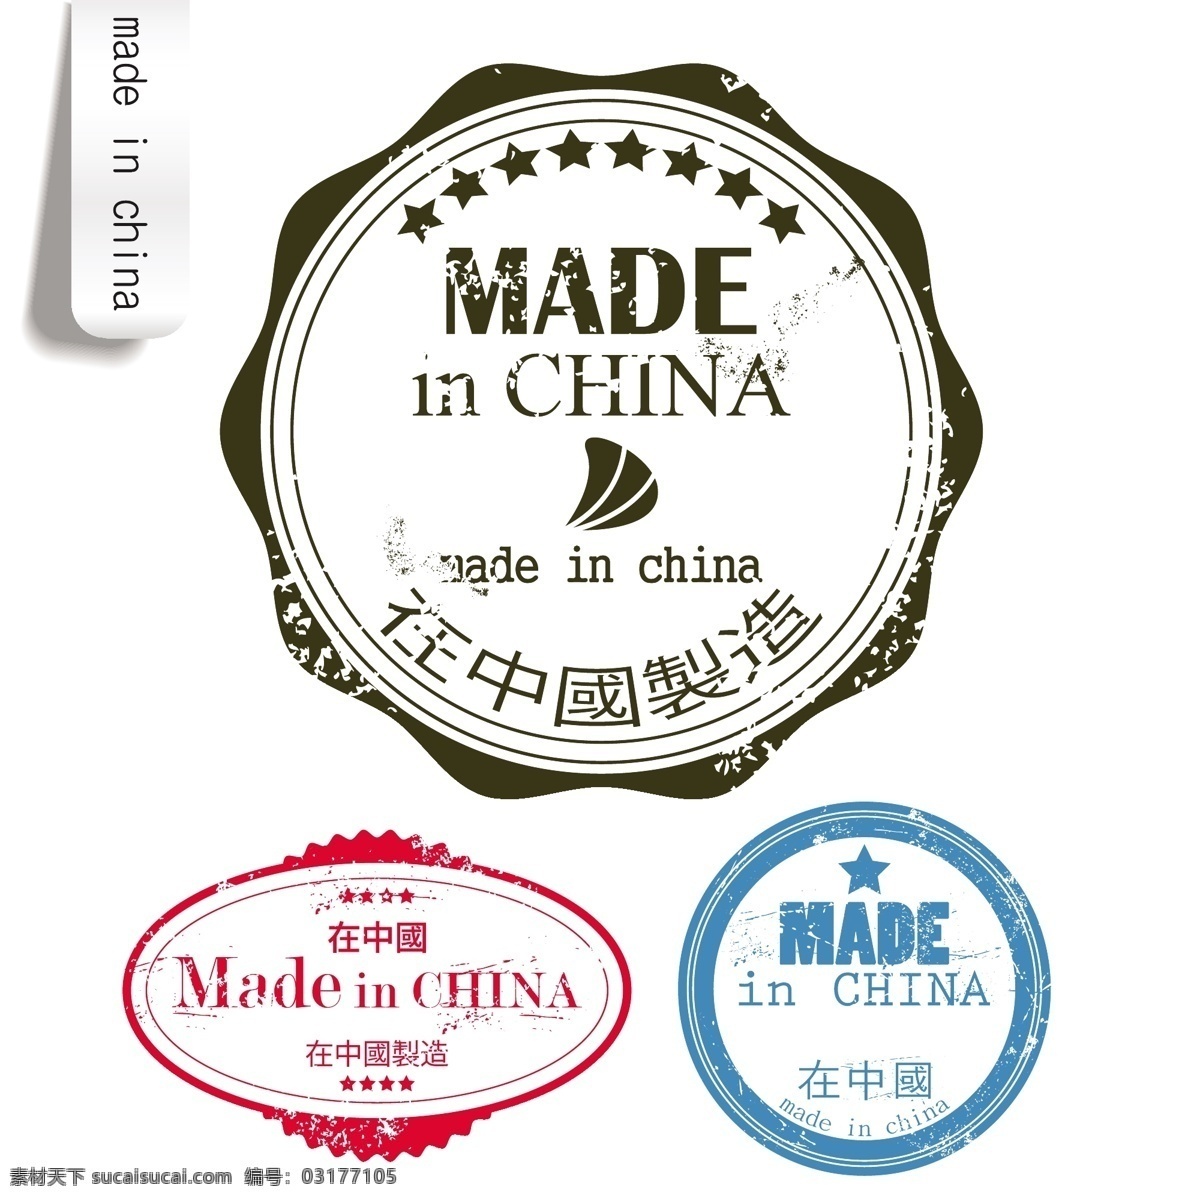 中国制造 标签 矢量 eps格式 标贴 徽章 矢量素材 图章 印章 印签